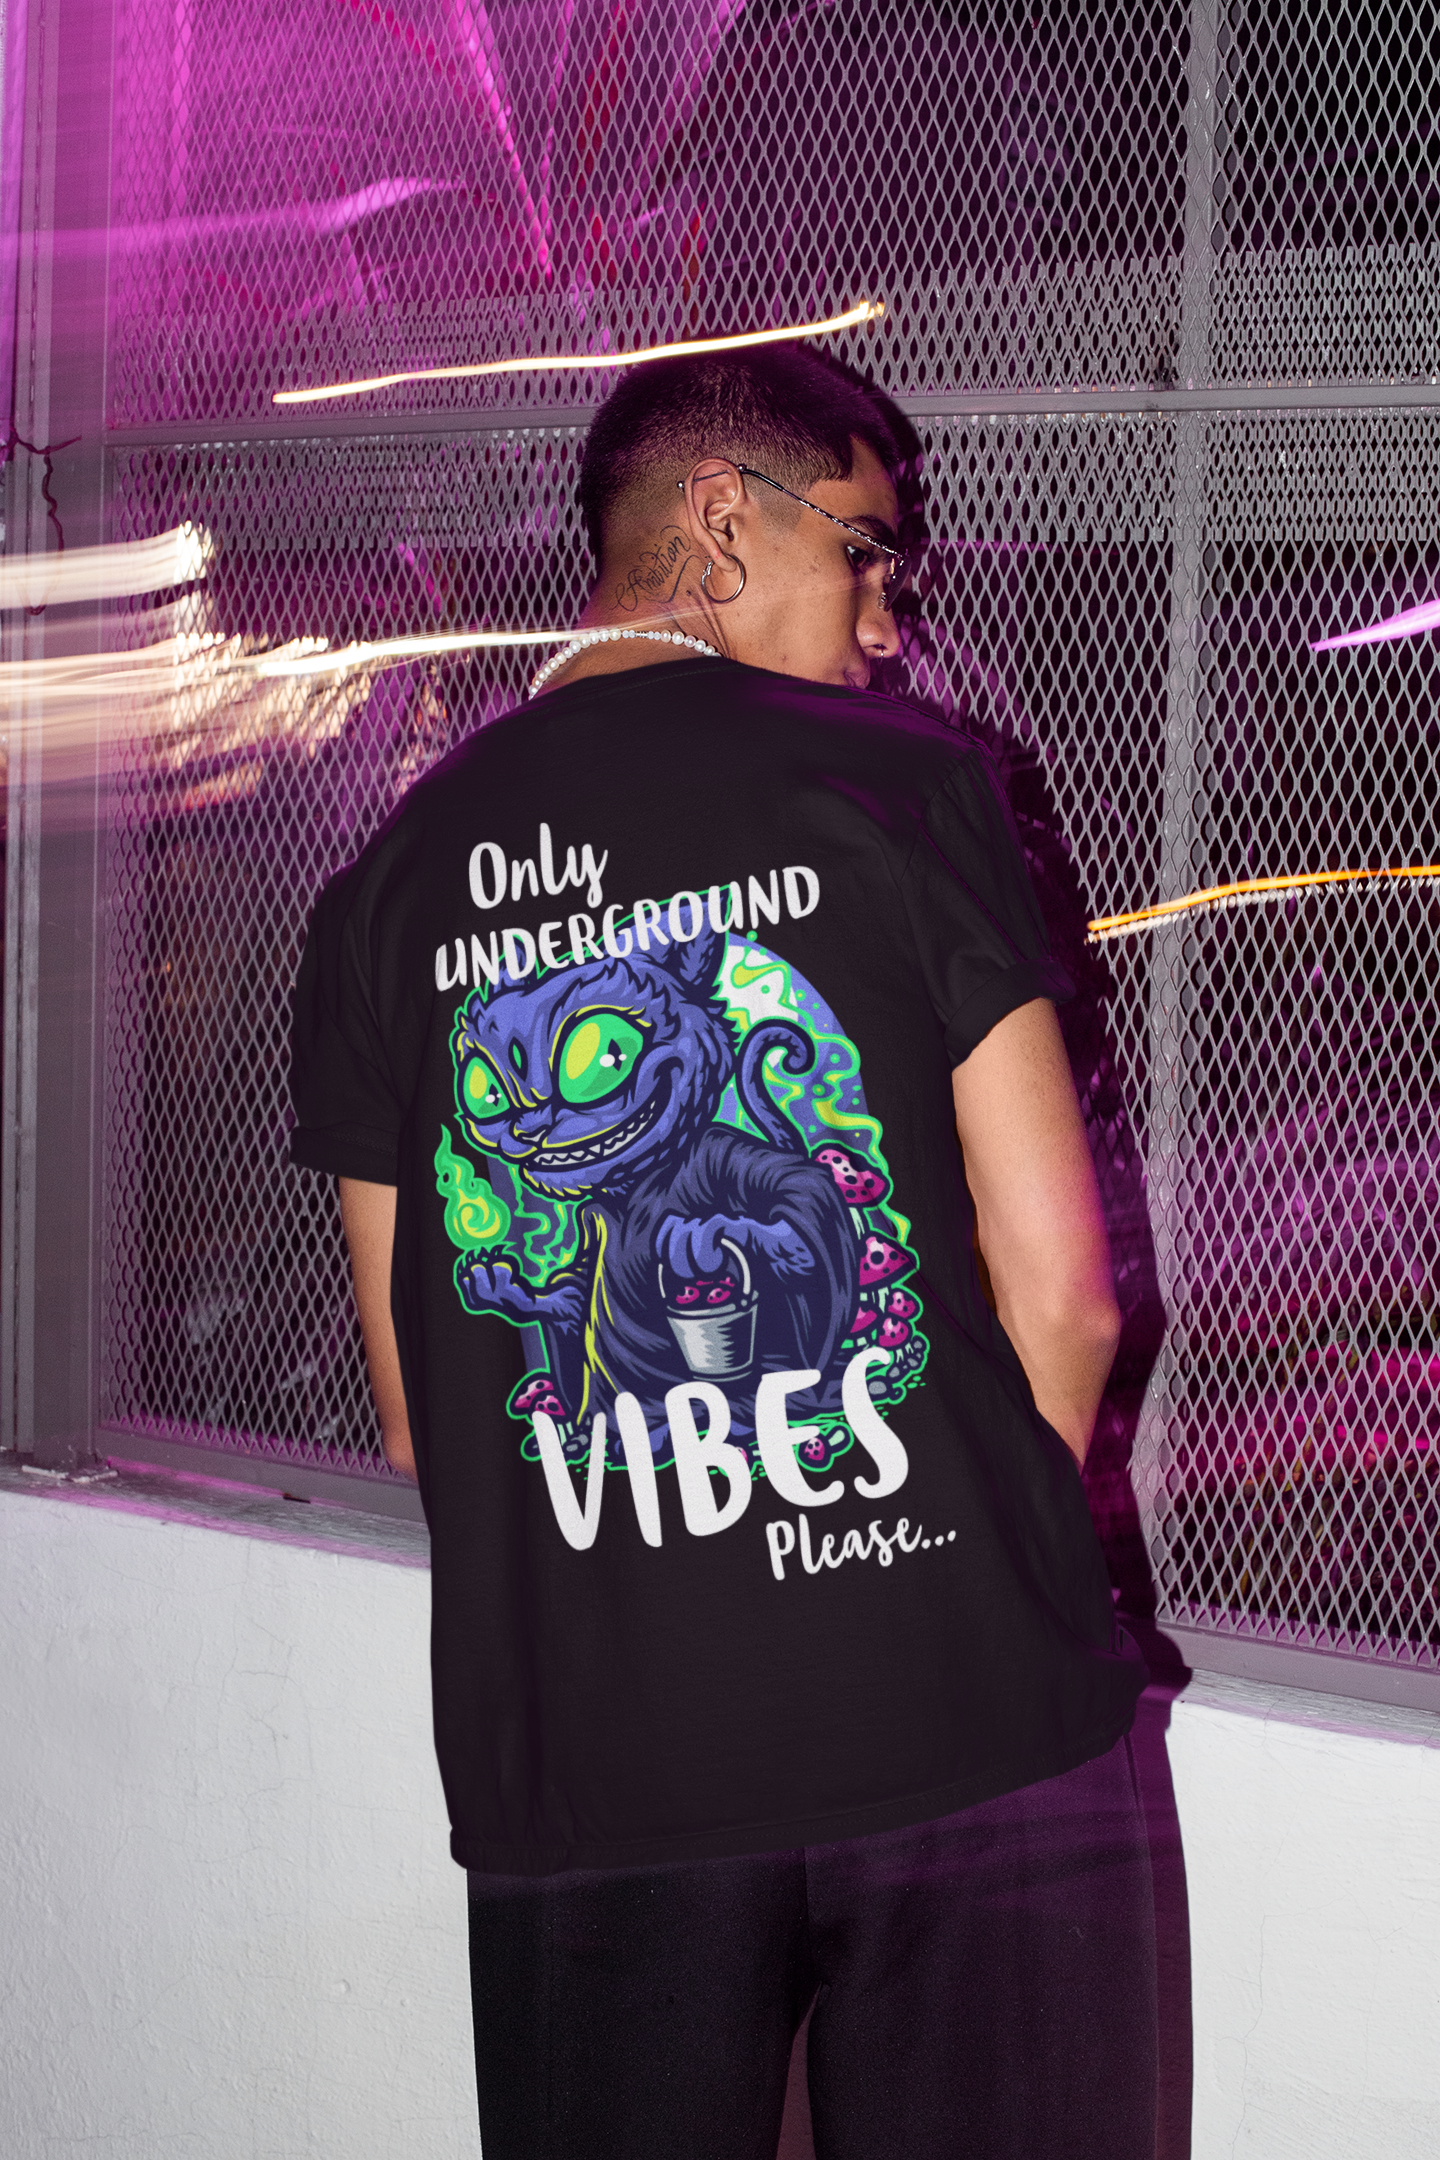 Only underground vibes - Unisex T-Shirt - CatsOnDrugs